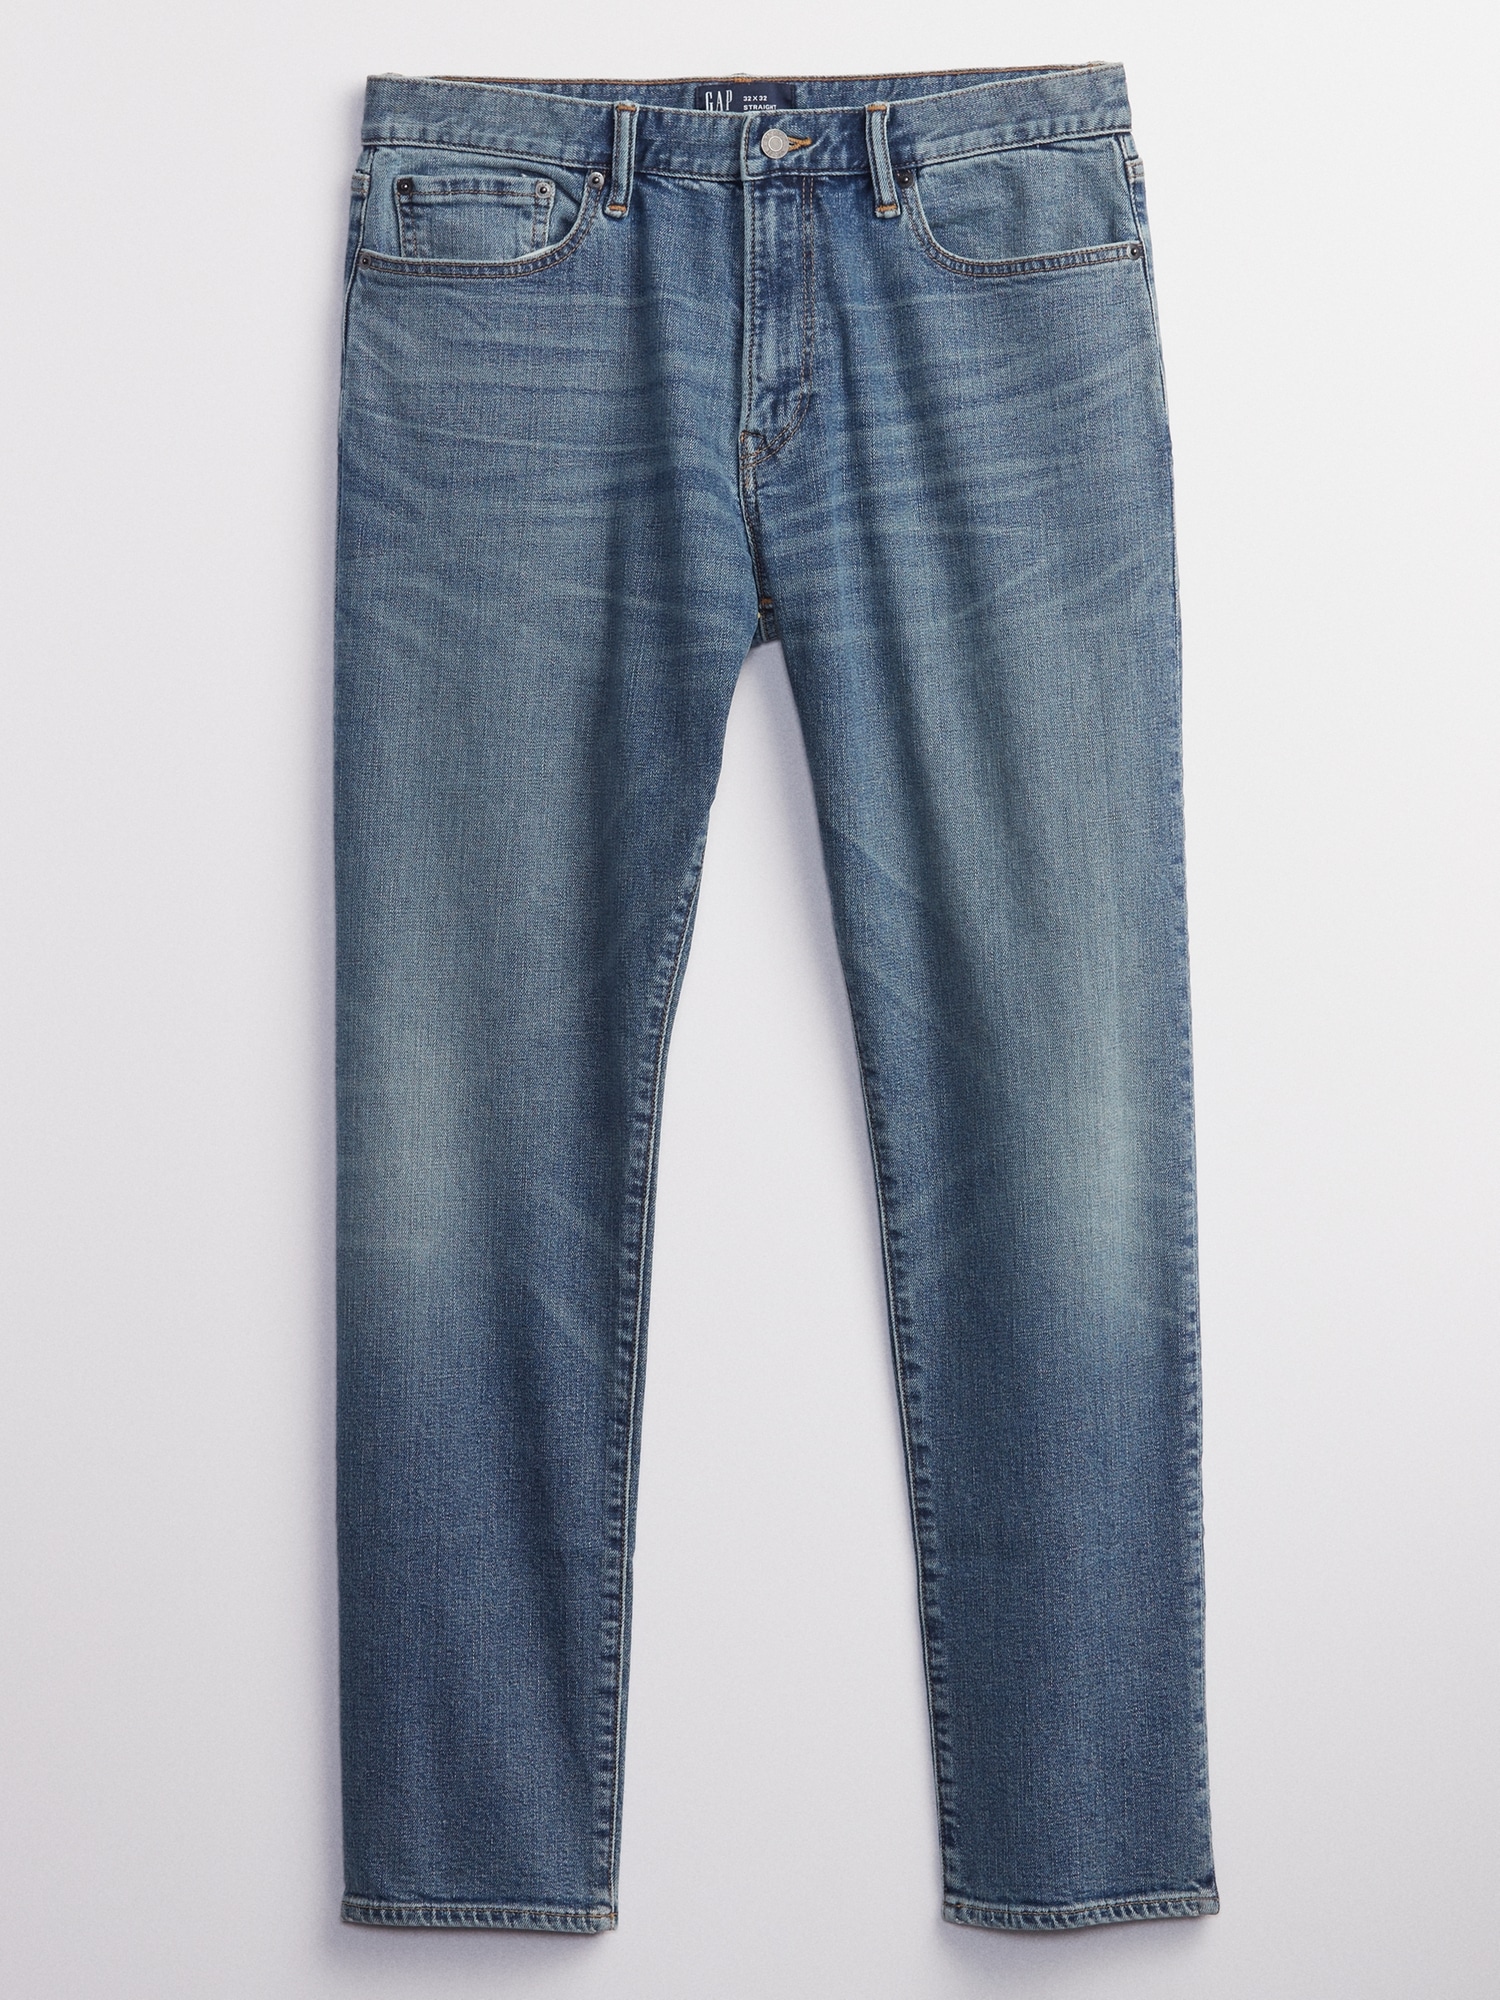 Shop Men DARKINDIGO Slim Taper GapFlex Jeans with Washwell - 34W